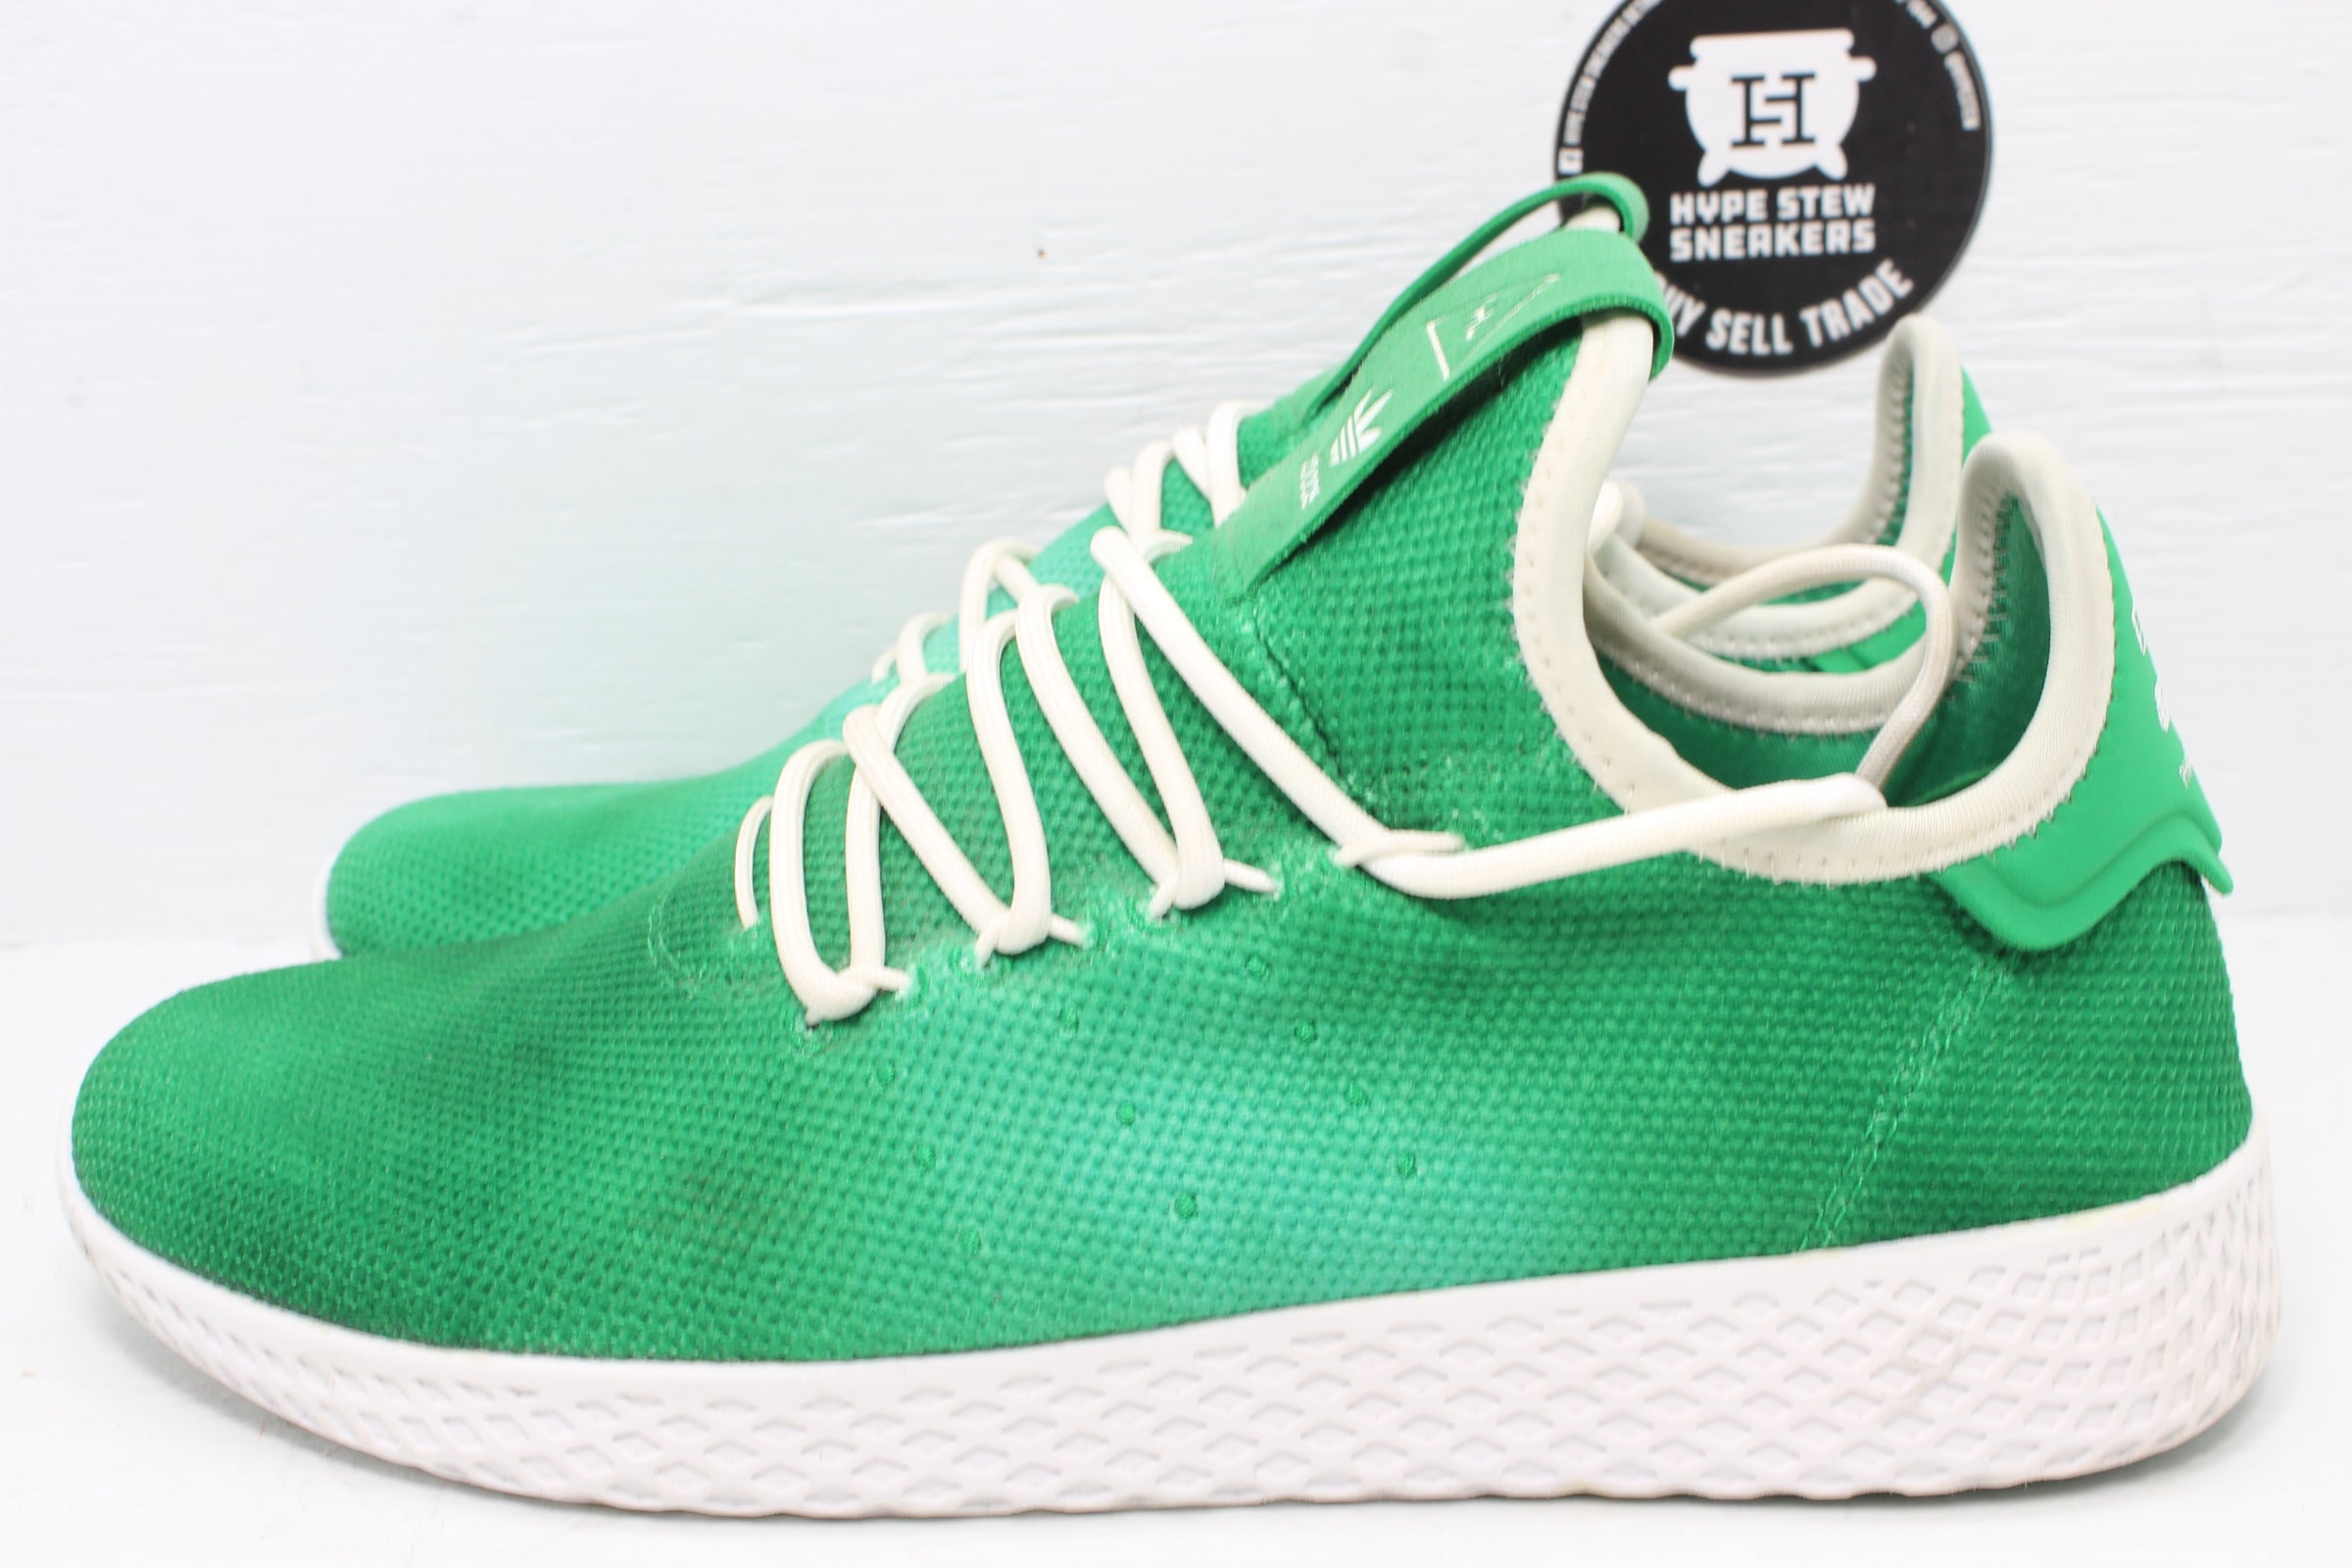 Artículos de primera necesidad Tacto compañero Adidas Tennis HU Pharrell Holi Green | Hype Stew Sneakers Detroit